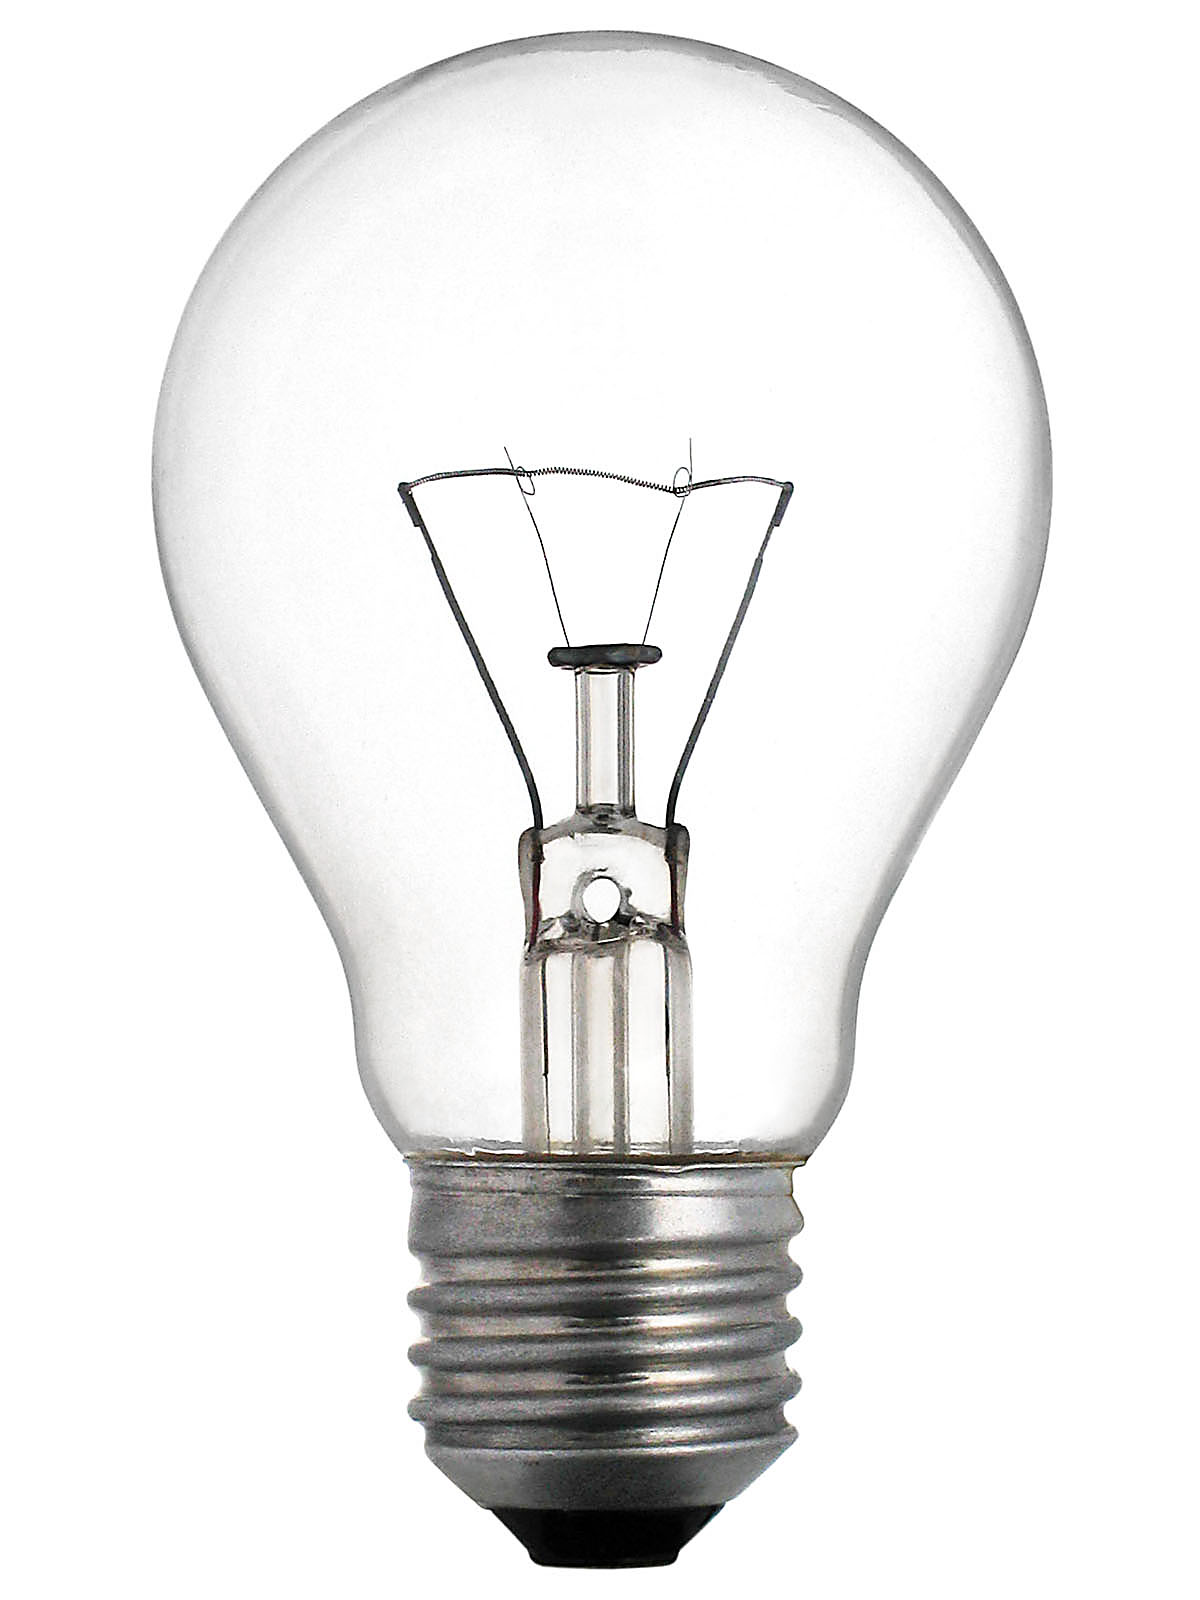 Лампа накаливания (Standart Е-27 / 100W)